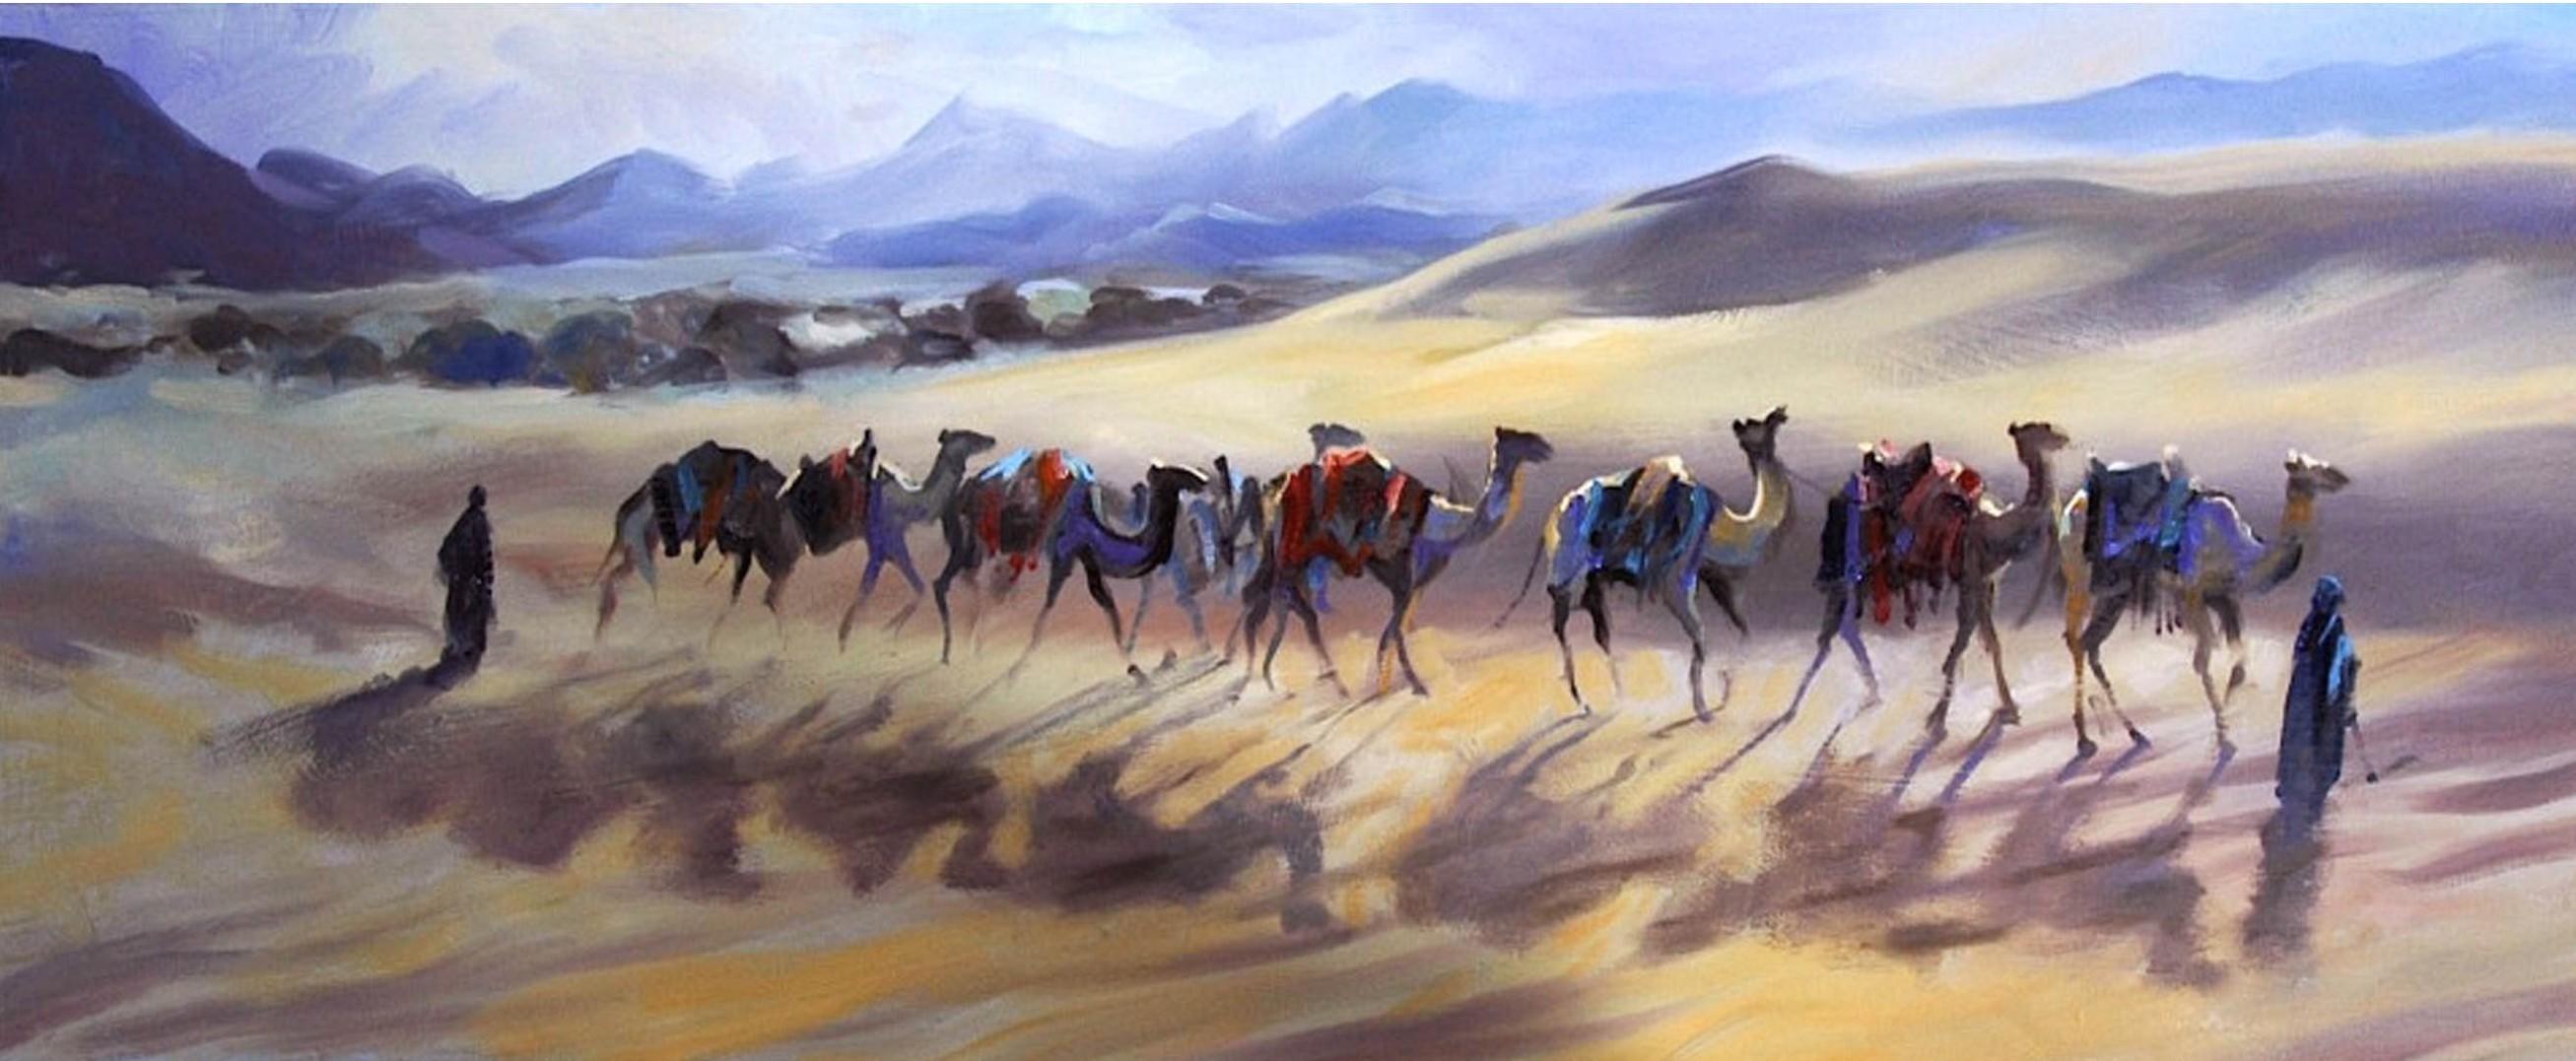 Trevor Waugh Landscape Painting - Camels Contre Jour